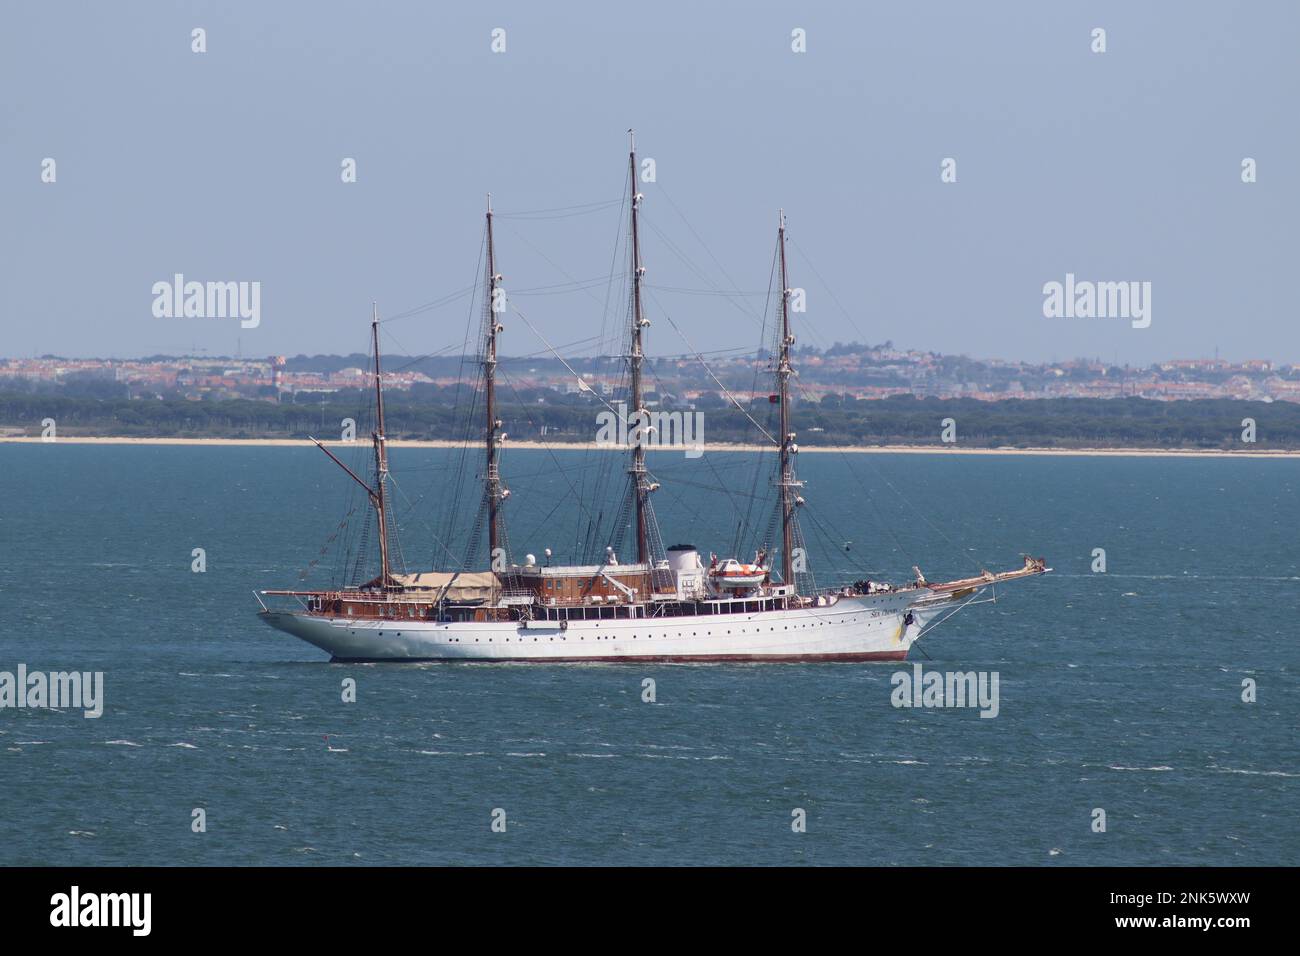 Le bateau de croisière Sea Cloud, grégleur de 2 500 tonnes de place, accueille moins de 70 personnes, à l'ancre dans l'estuaire du Tage, Lisbonne, Portugal. Banque D'Images